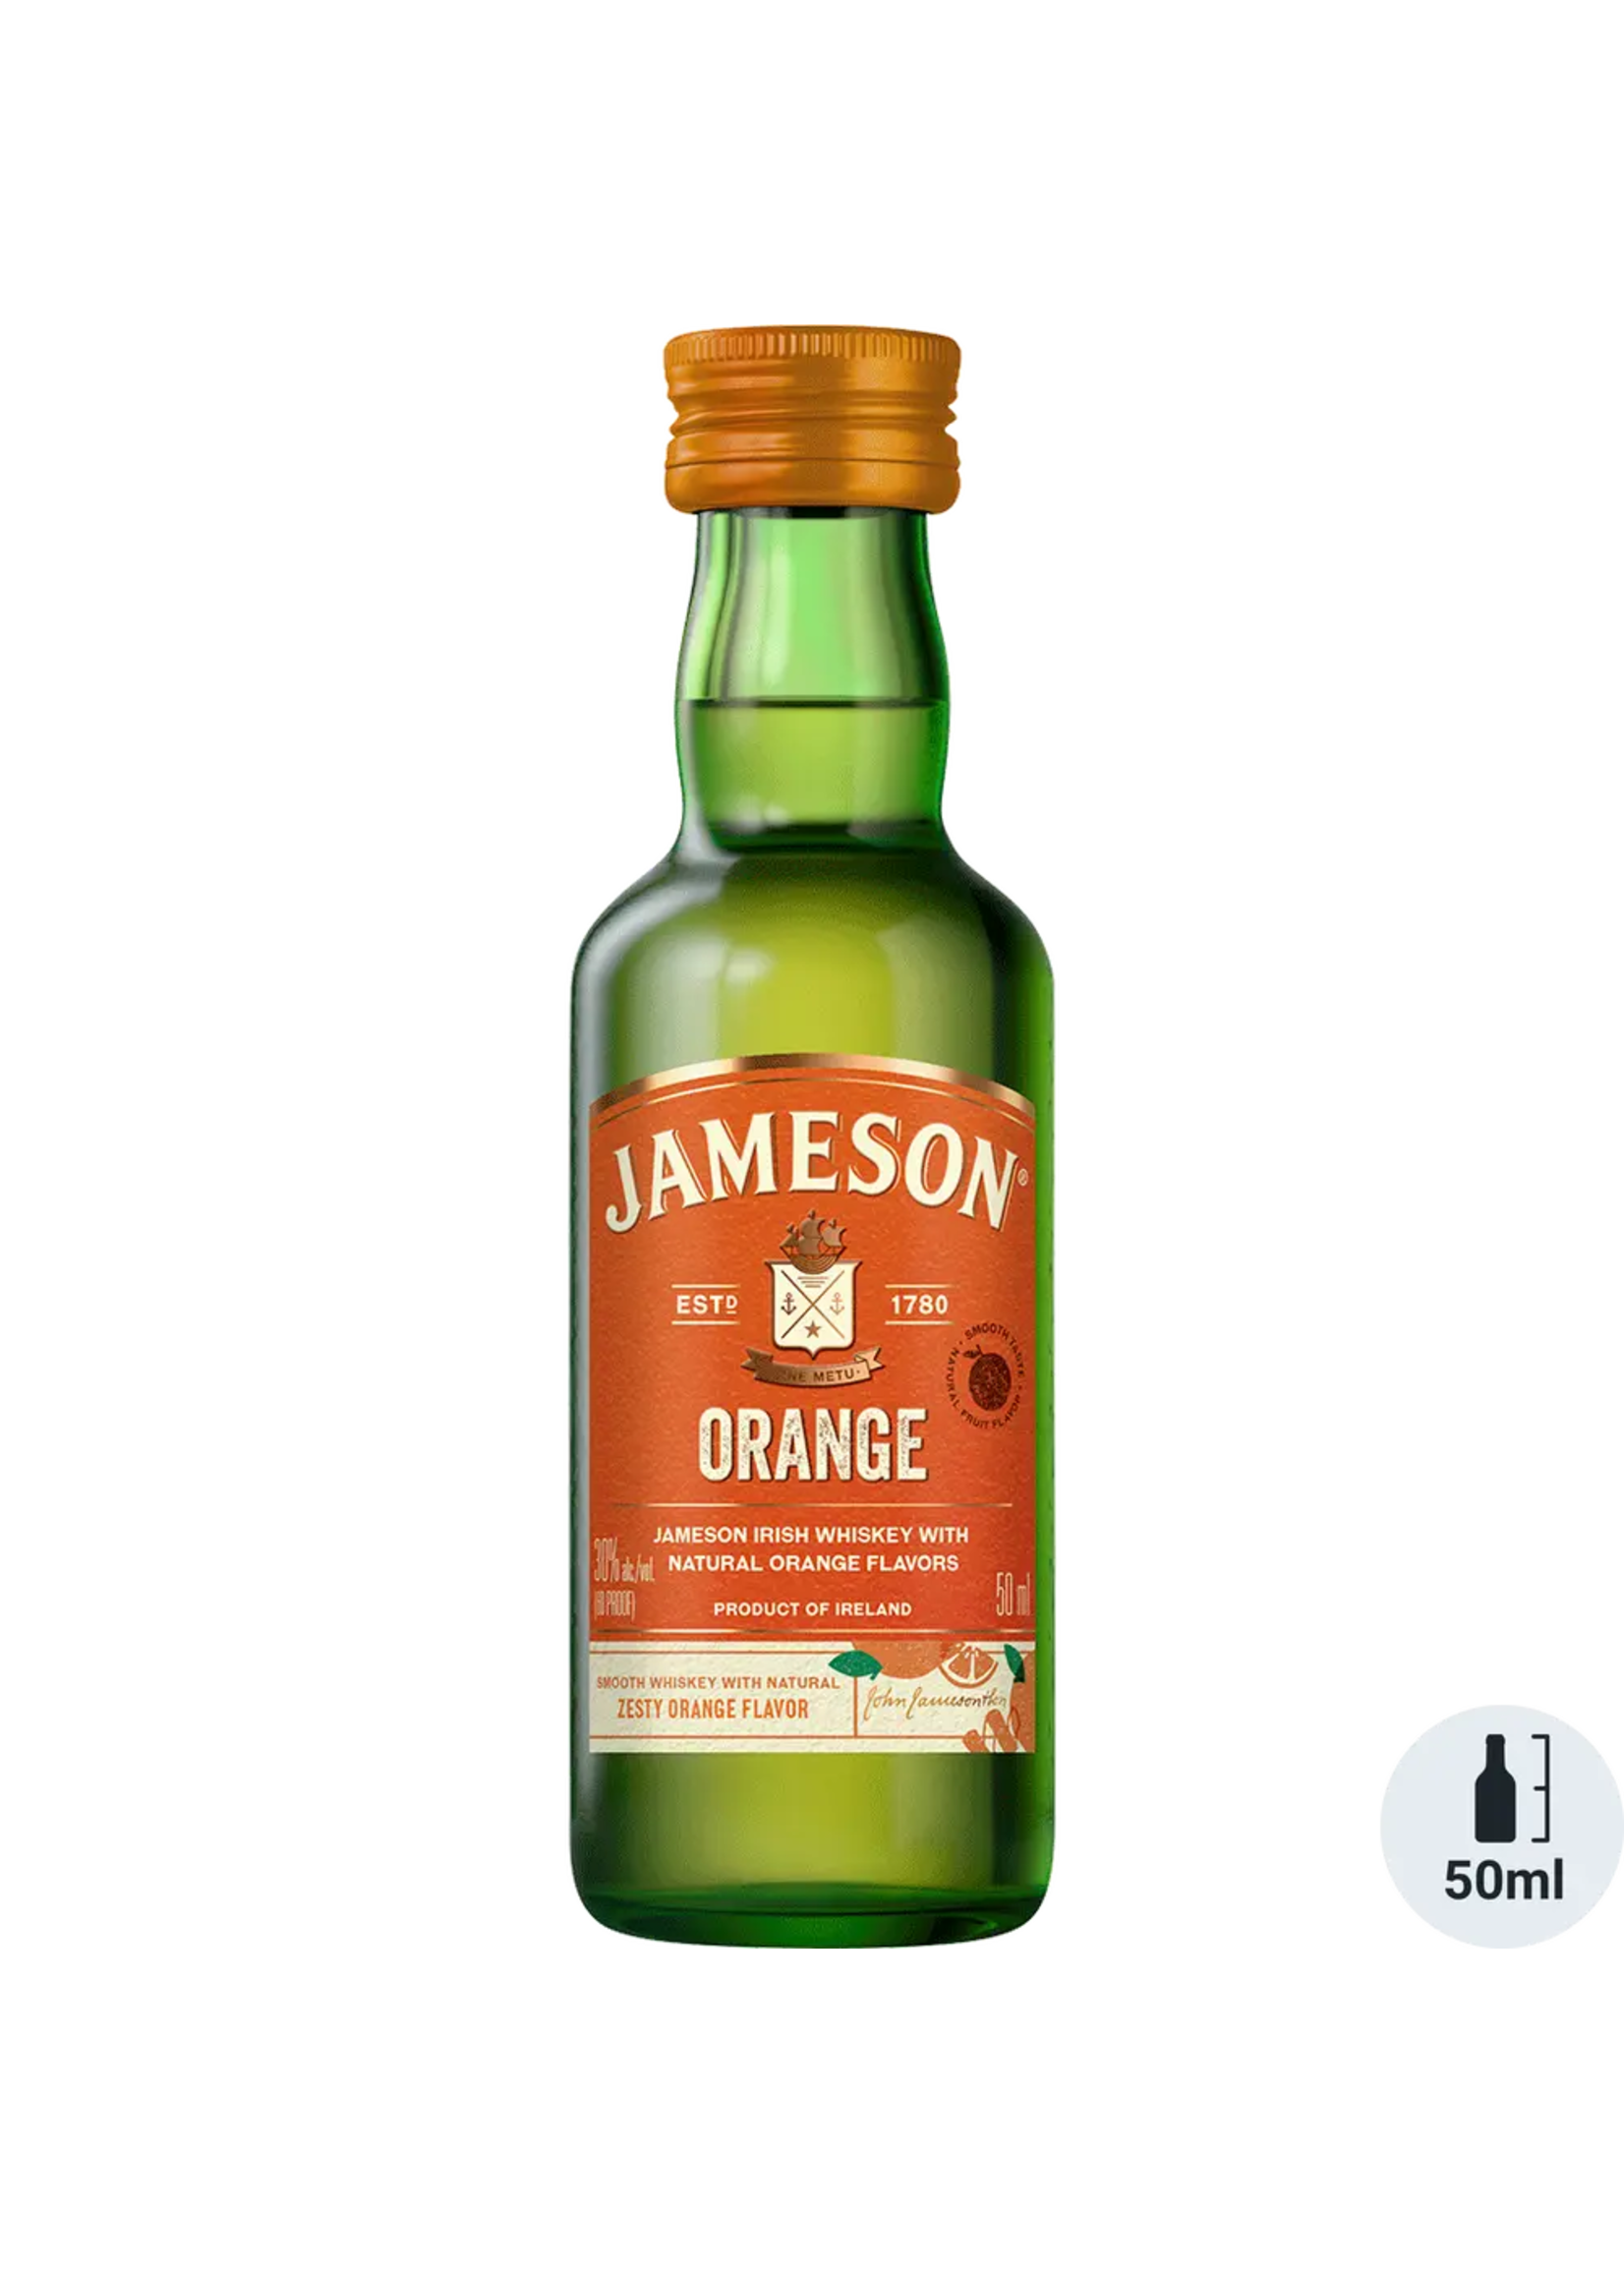 Jameson Orange Irish Whiskey 60Proof 50ml